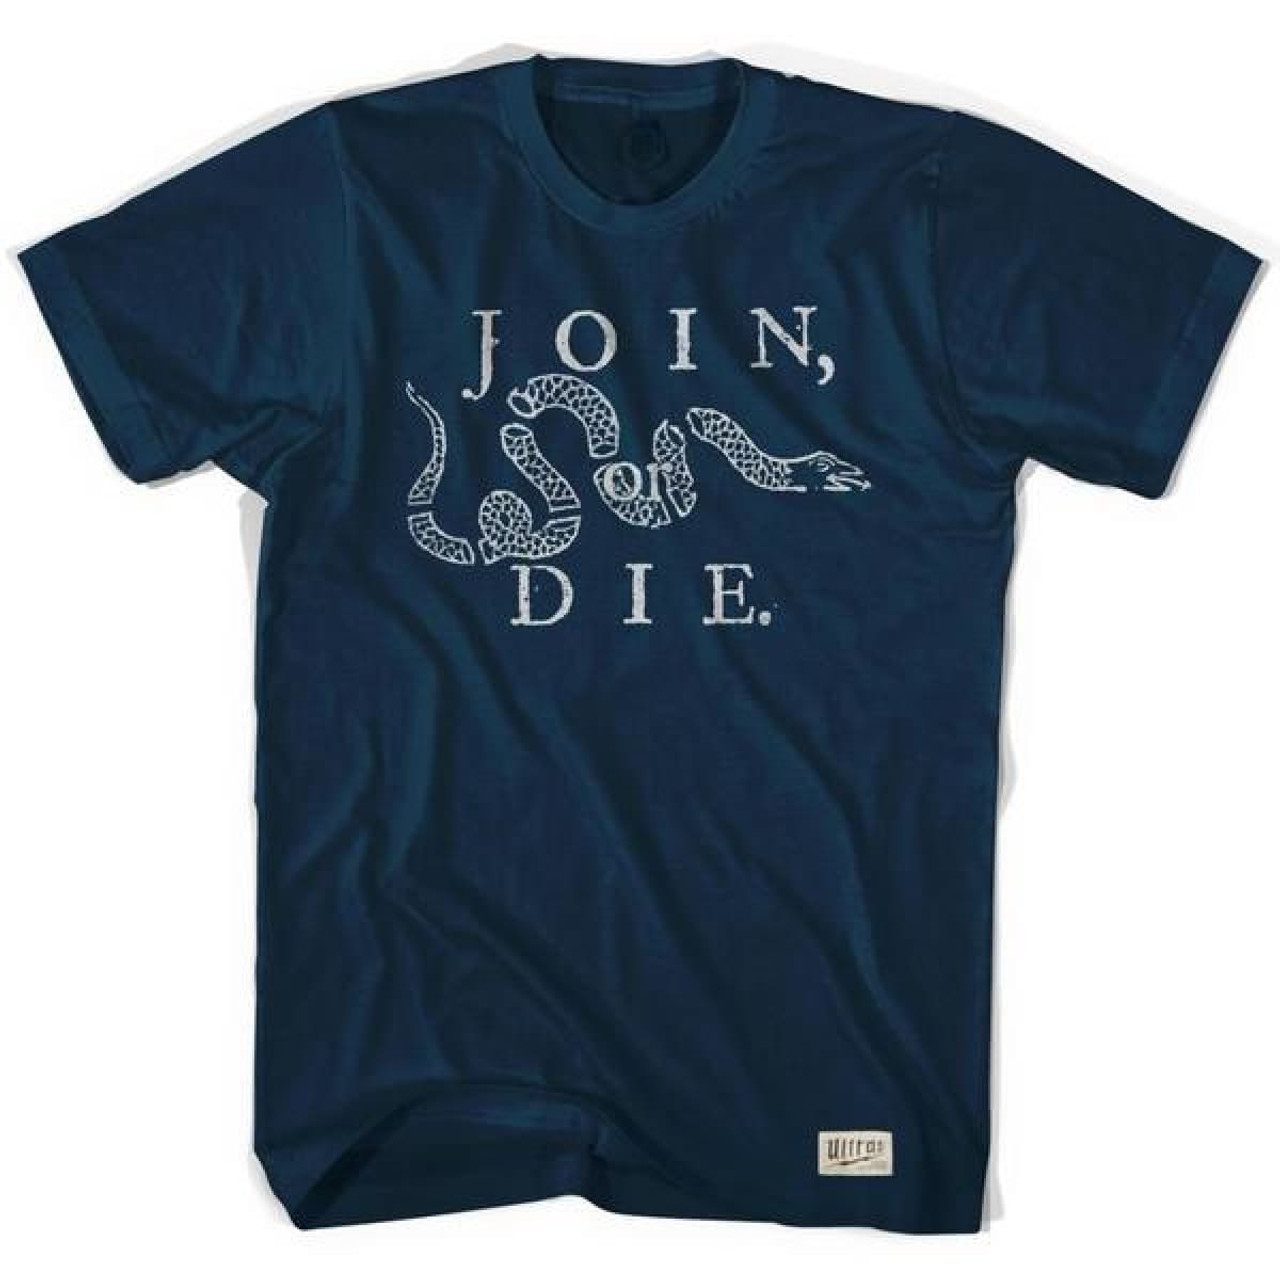 Philadelphia Join or Die Soccer T-shirt - Navy